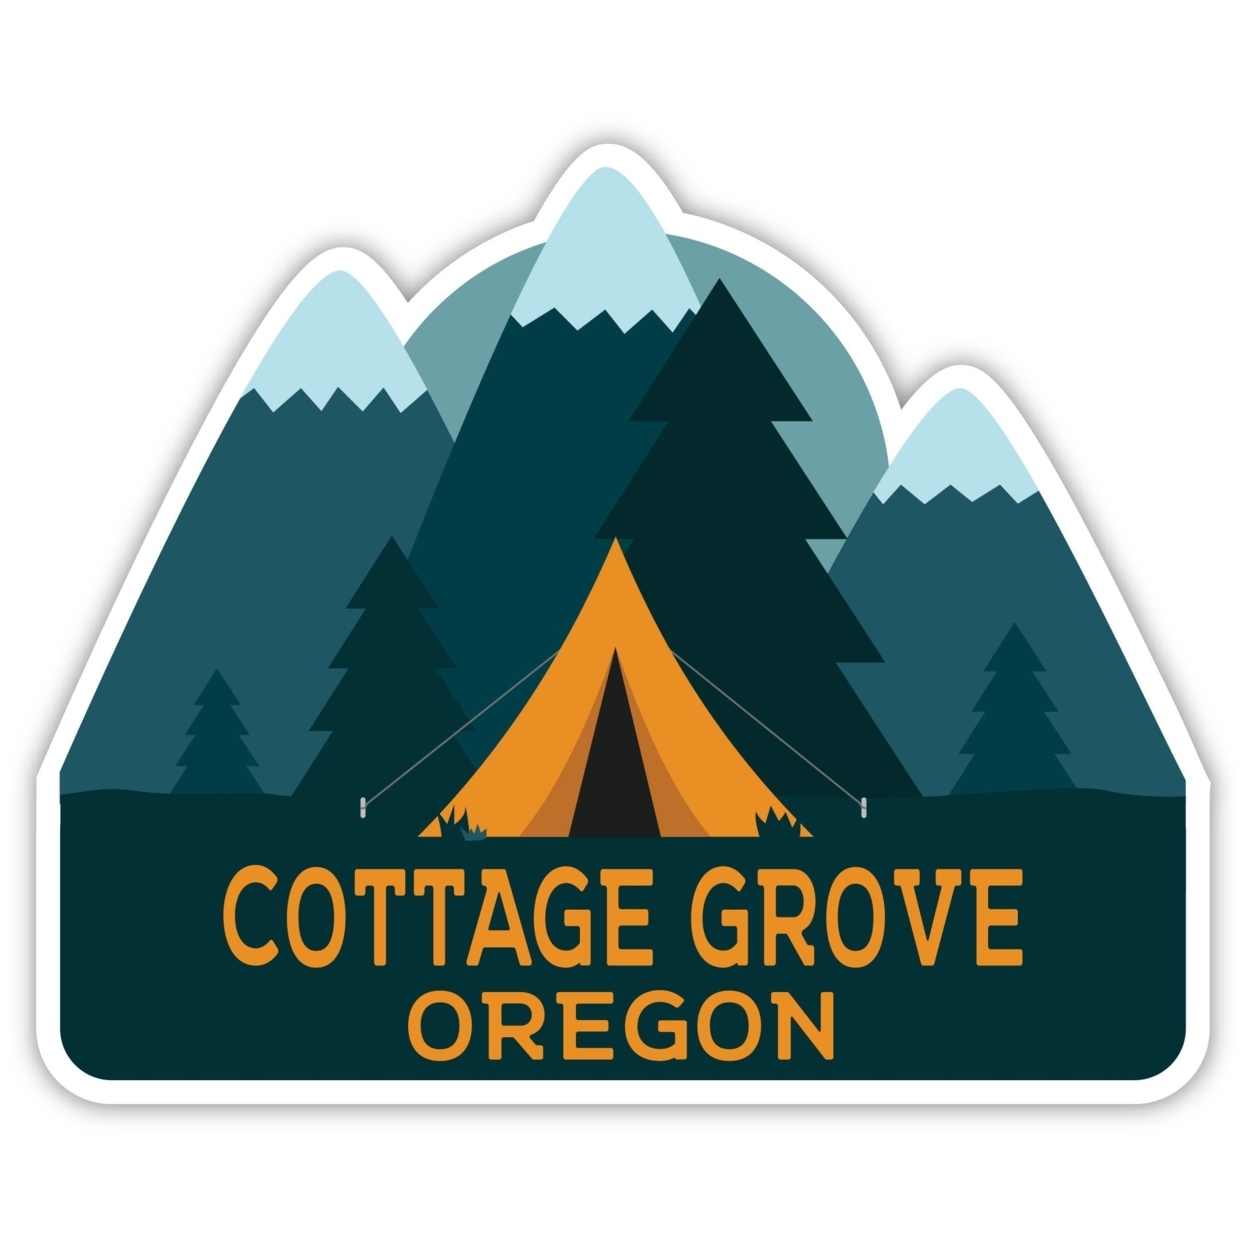 Cottage Grove Oregon Souvenir Decorative Stickers (Choose Theme And Size) - Single Unit, 8-Inch, Tent